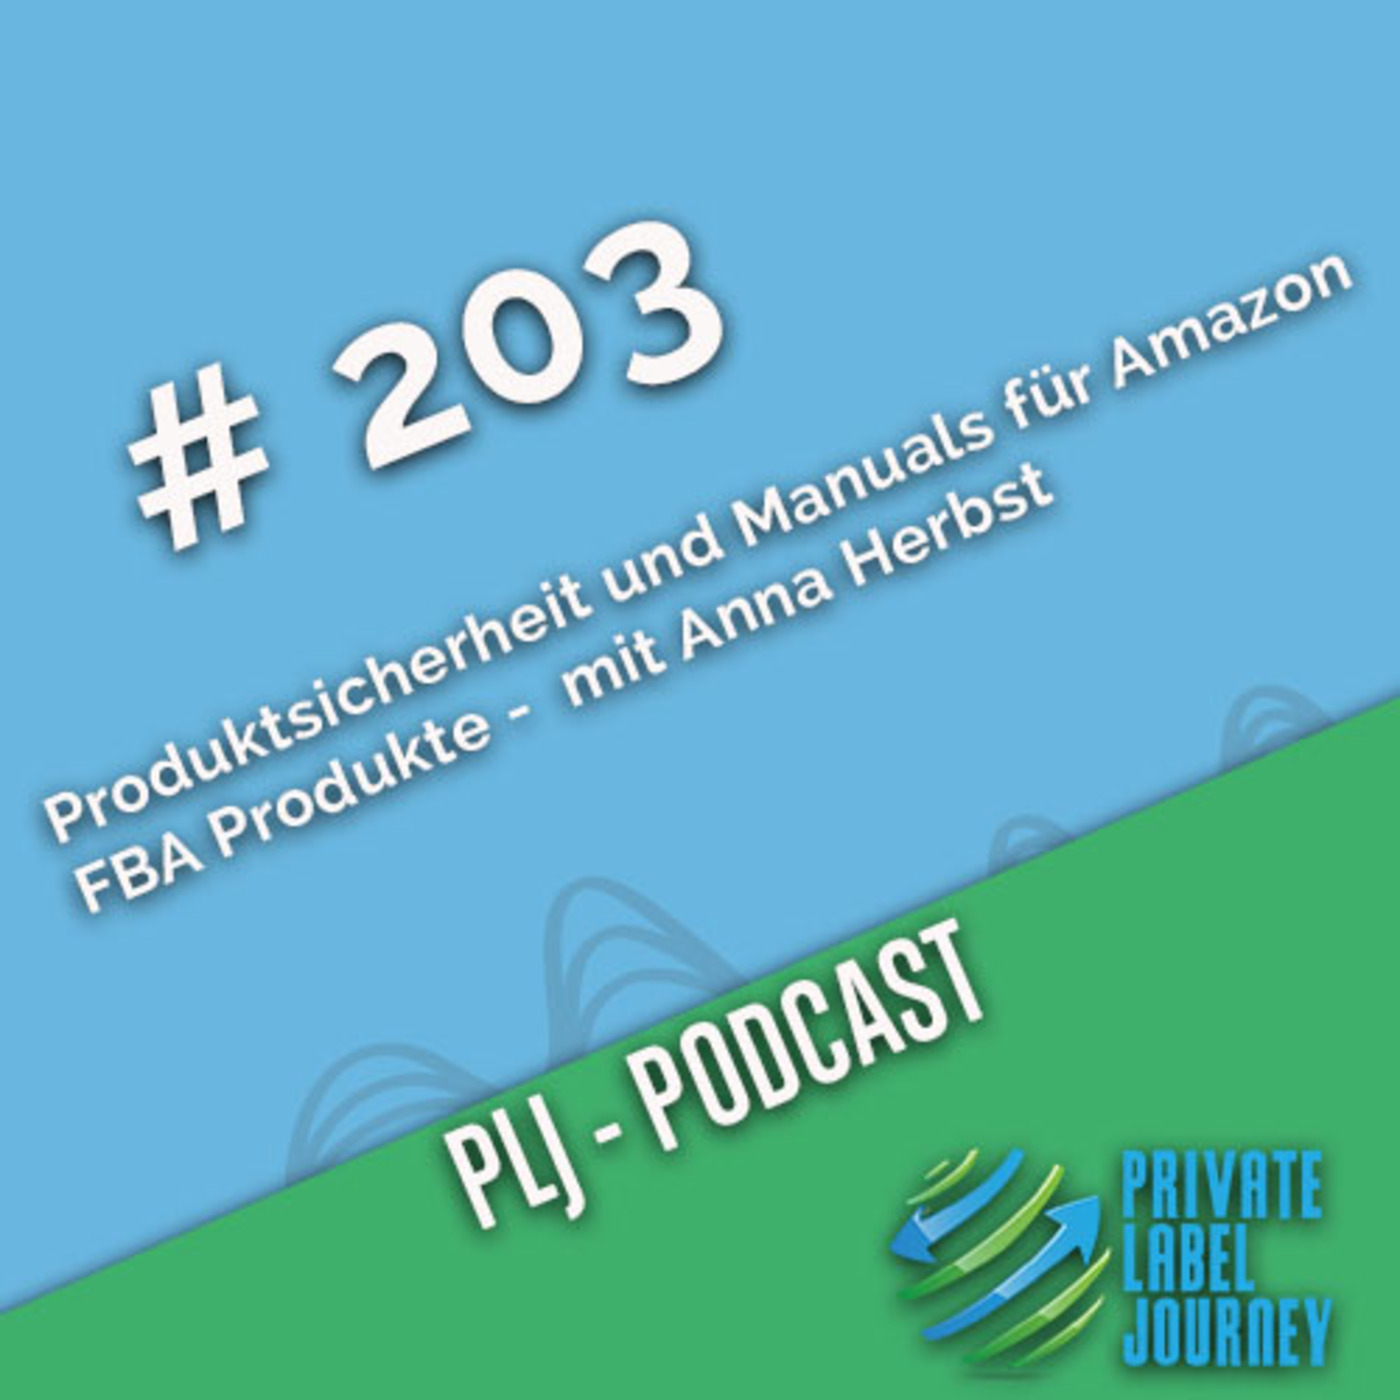 Produktsicherheit und Manuals für Amazon FBA Produkte - Podcast mit Anna Herbst